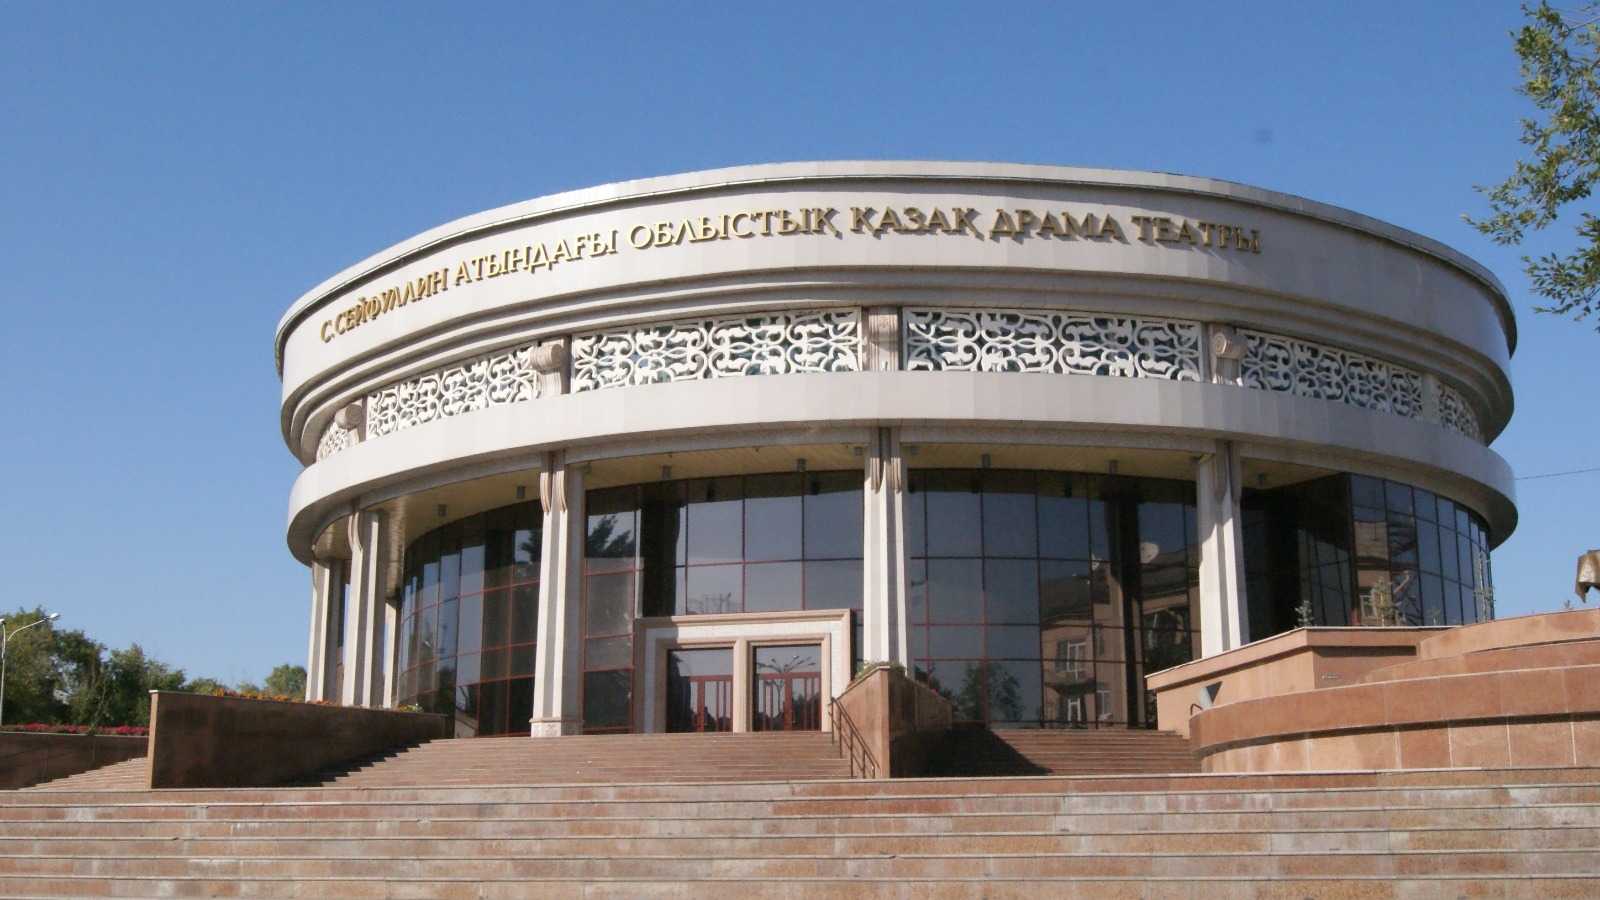 Қарағандыдағы Қаздрамтеатр жанынан қуыршақ театры ашылады